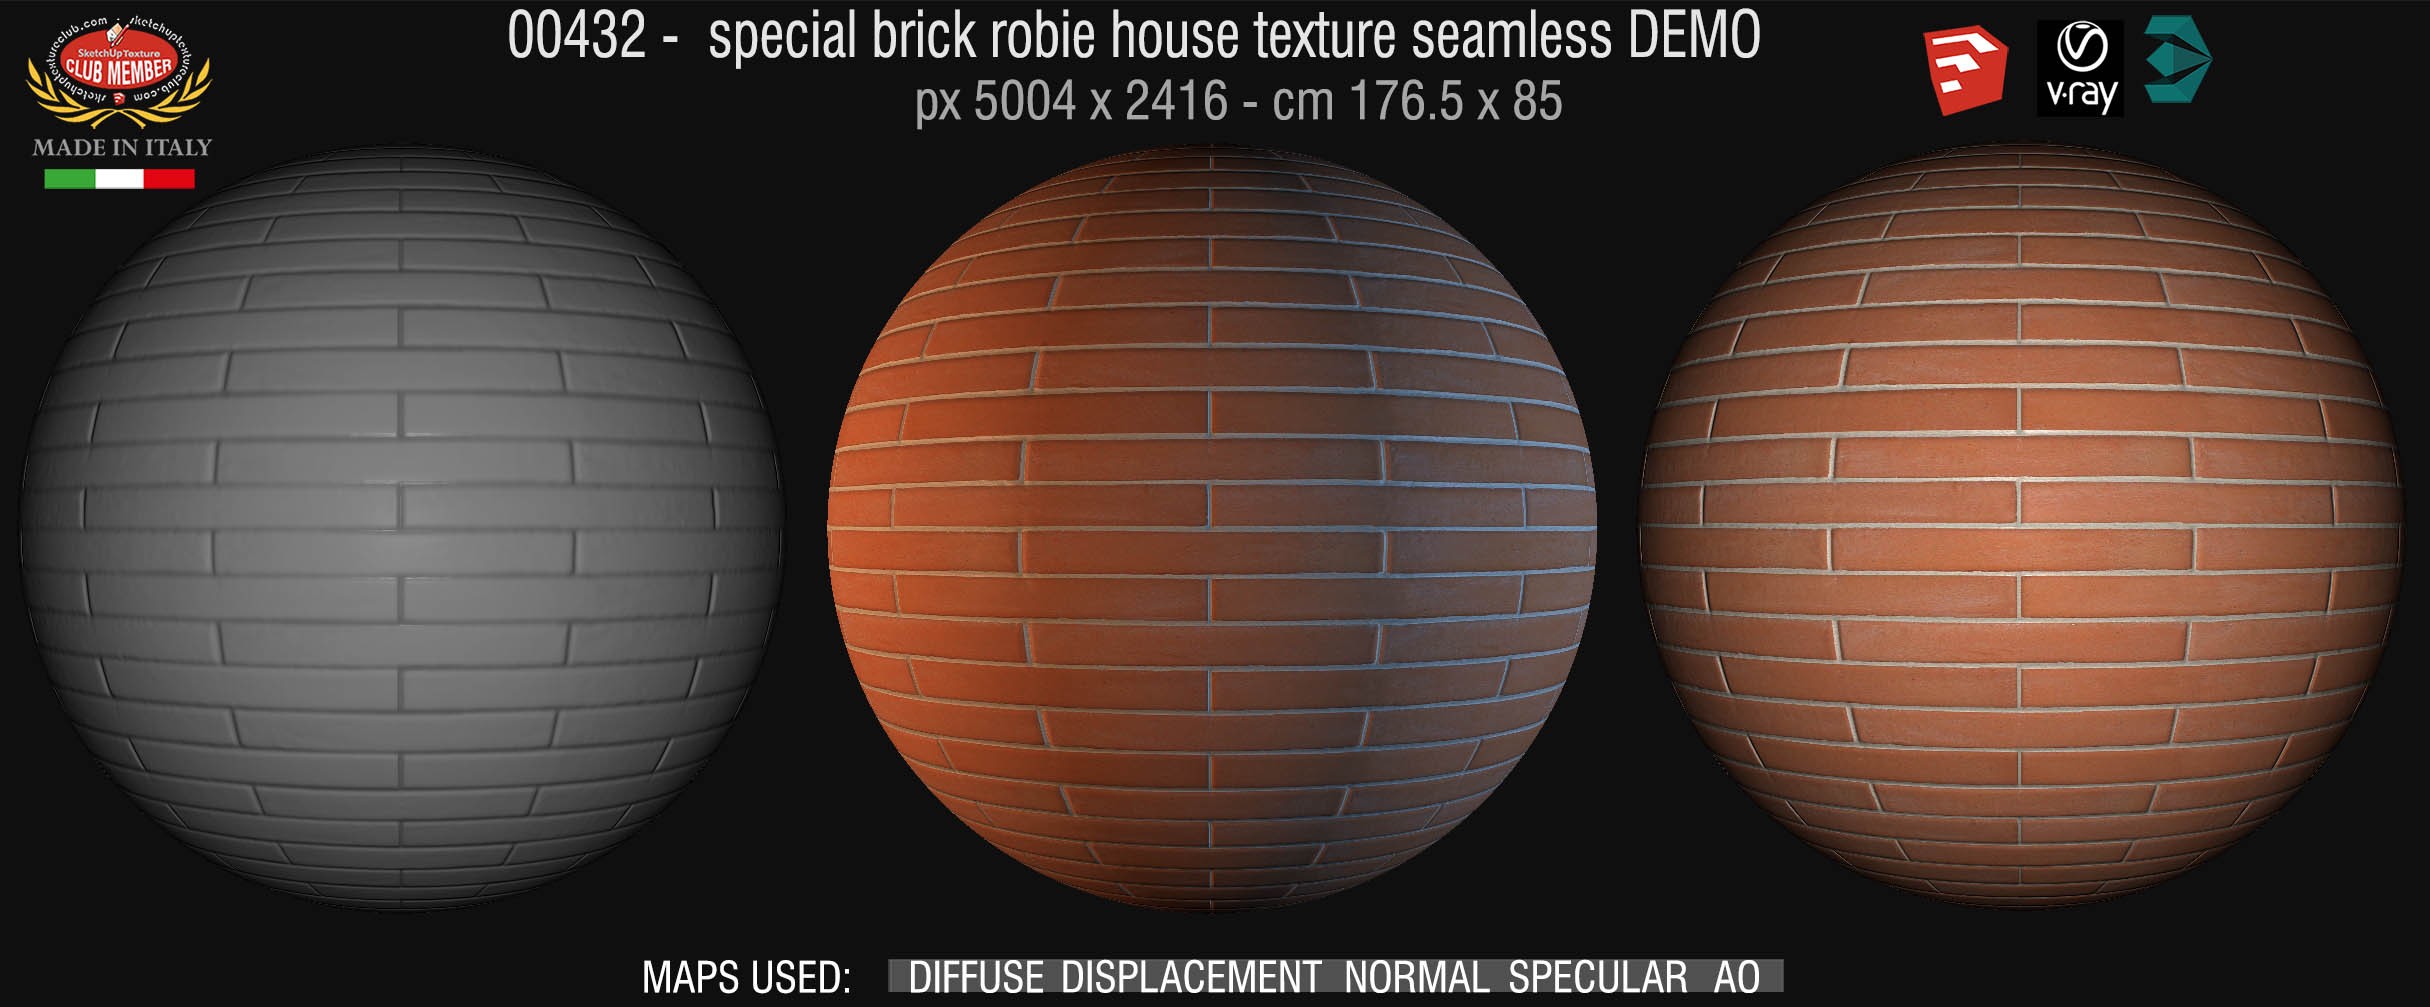 00432 special brick robie house texture seamless + maps DEMO